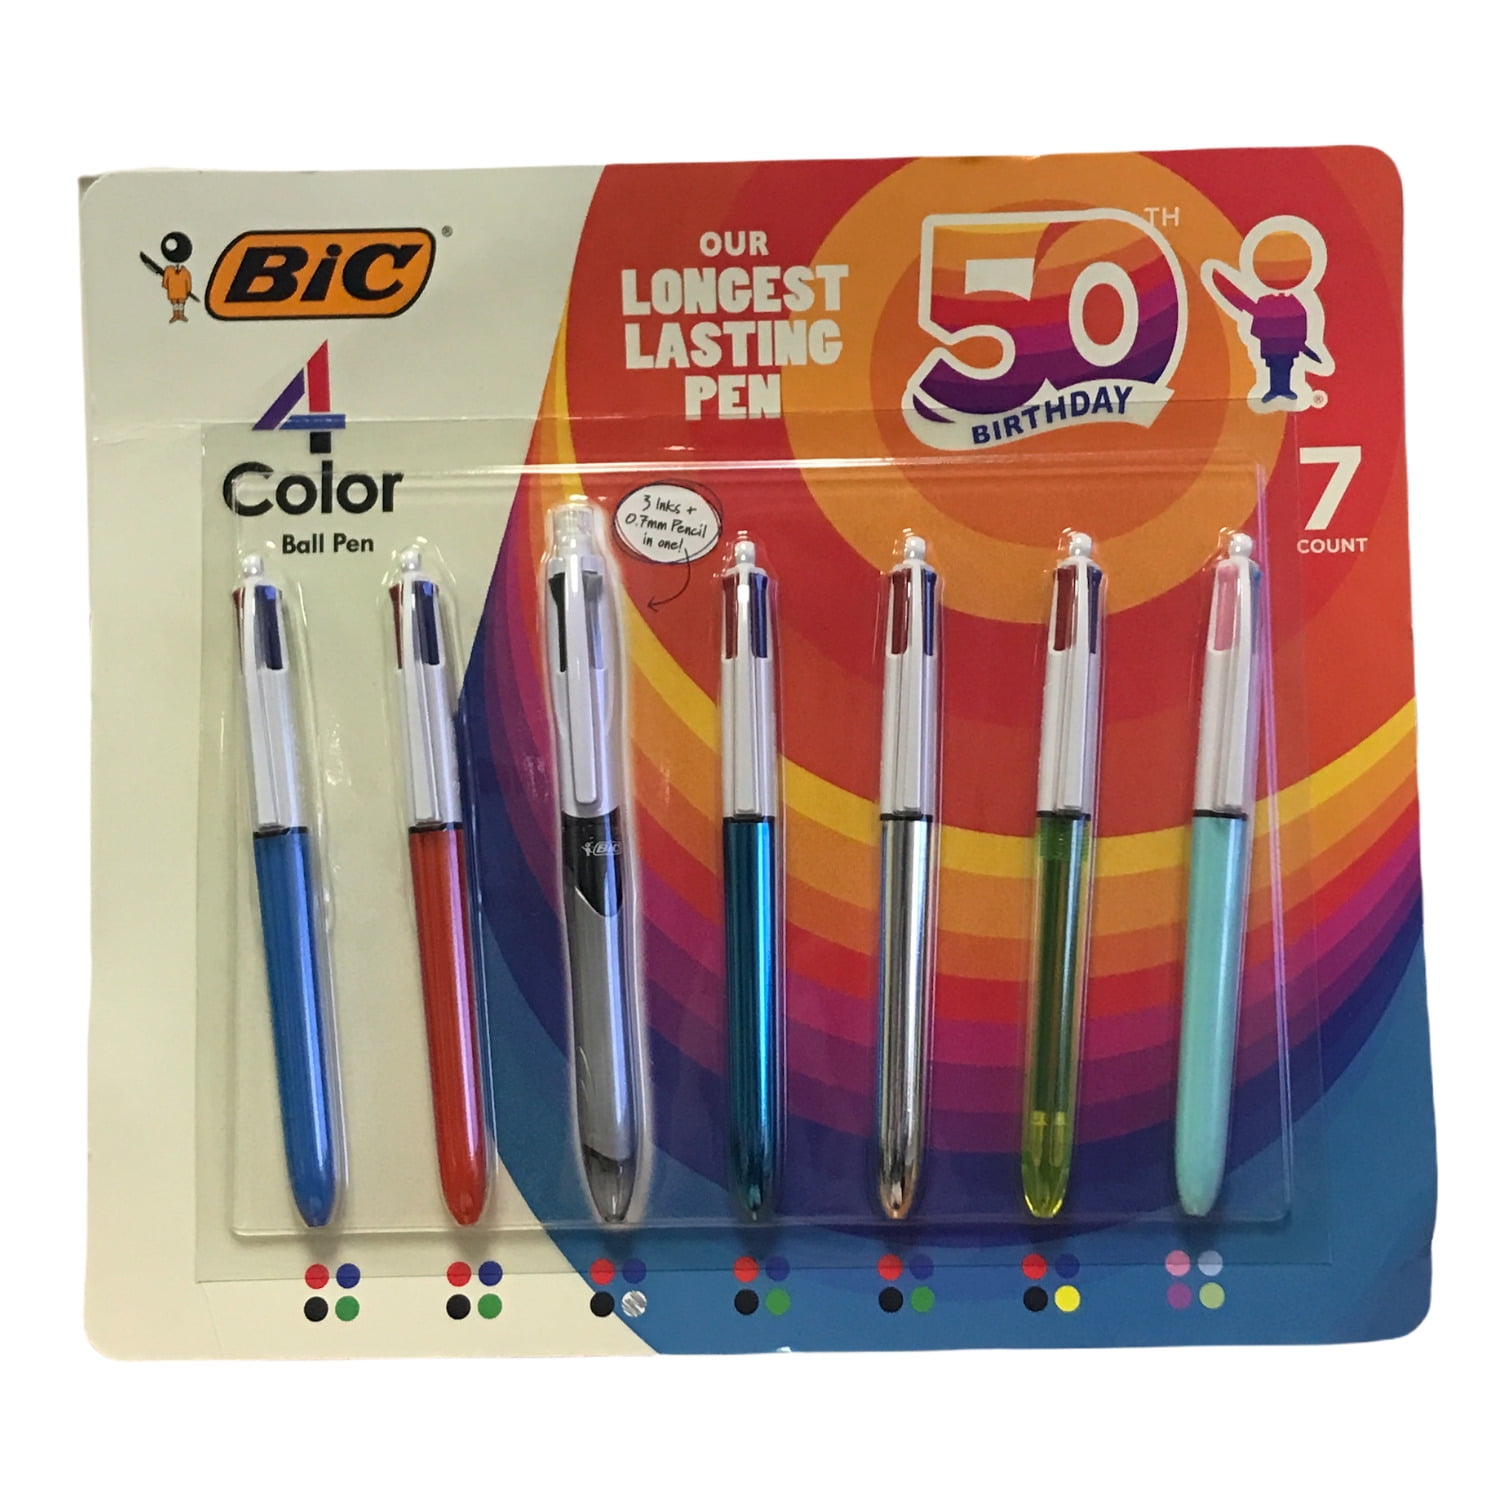 BIC 4-Color Pen